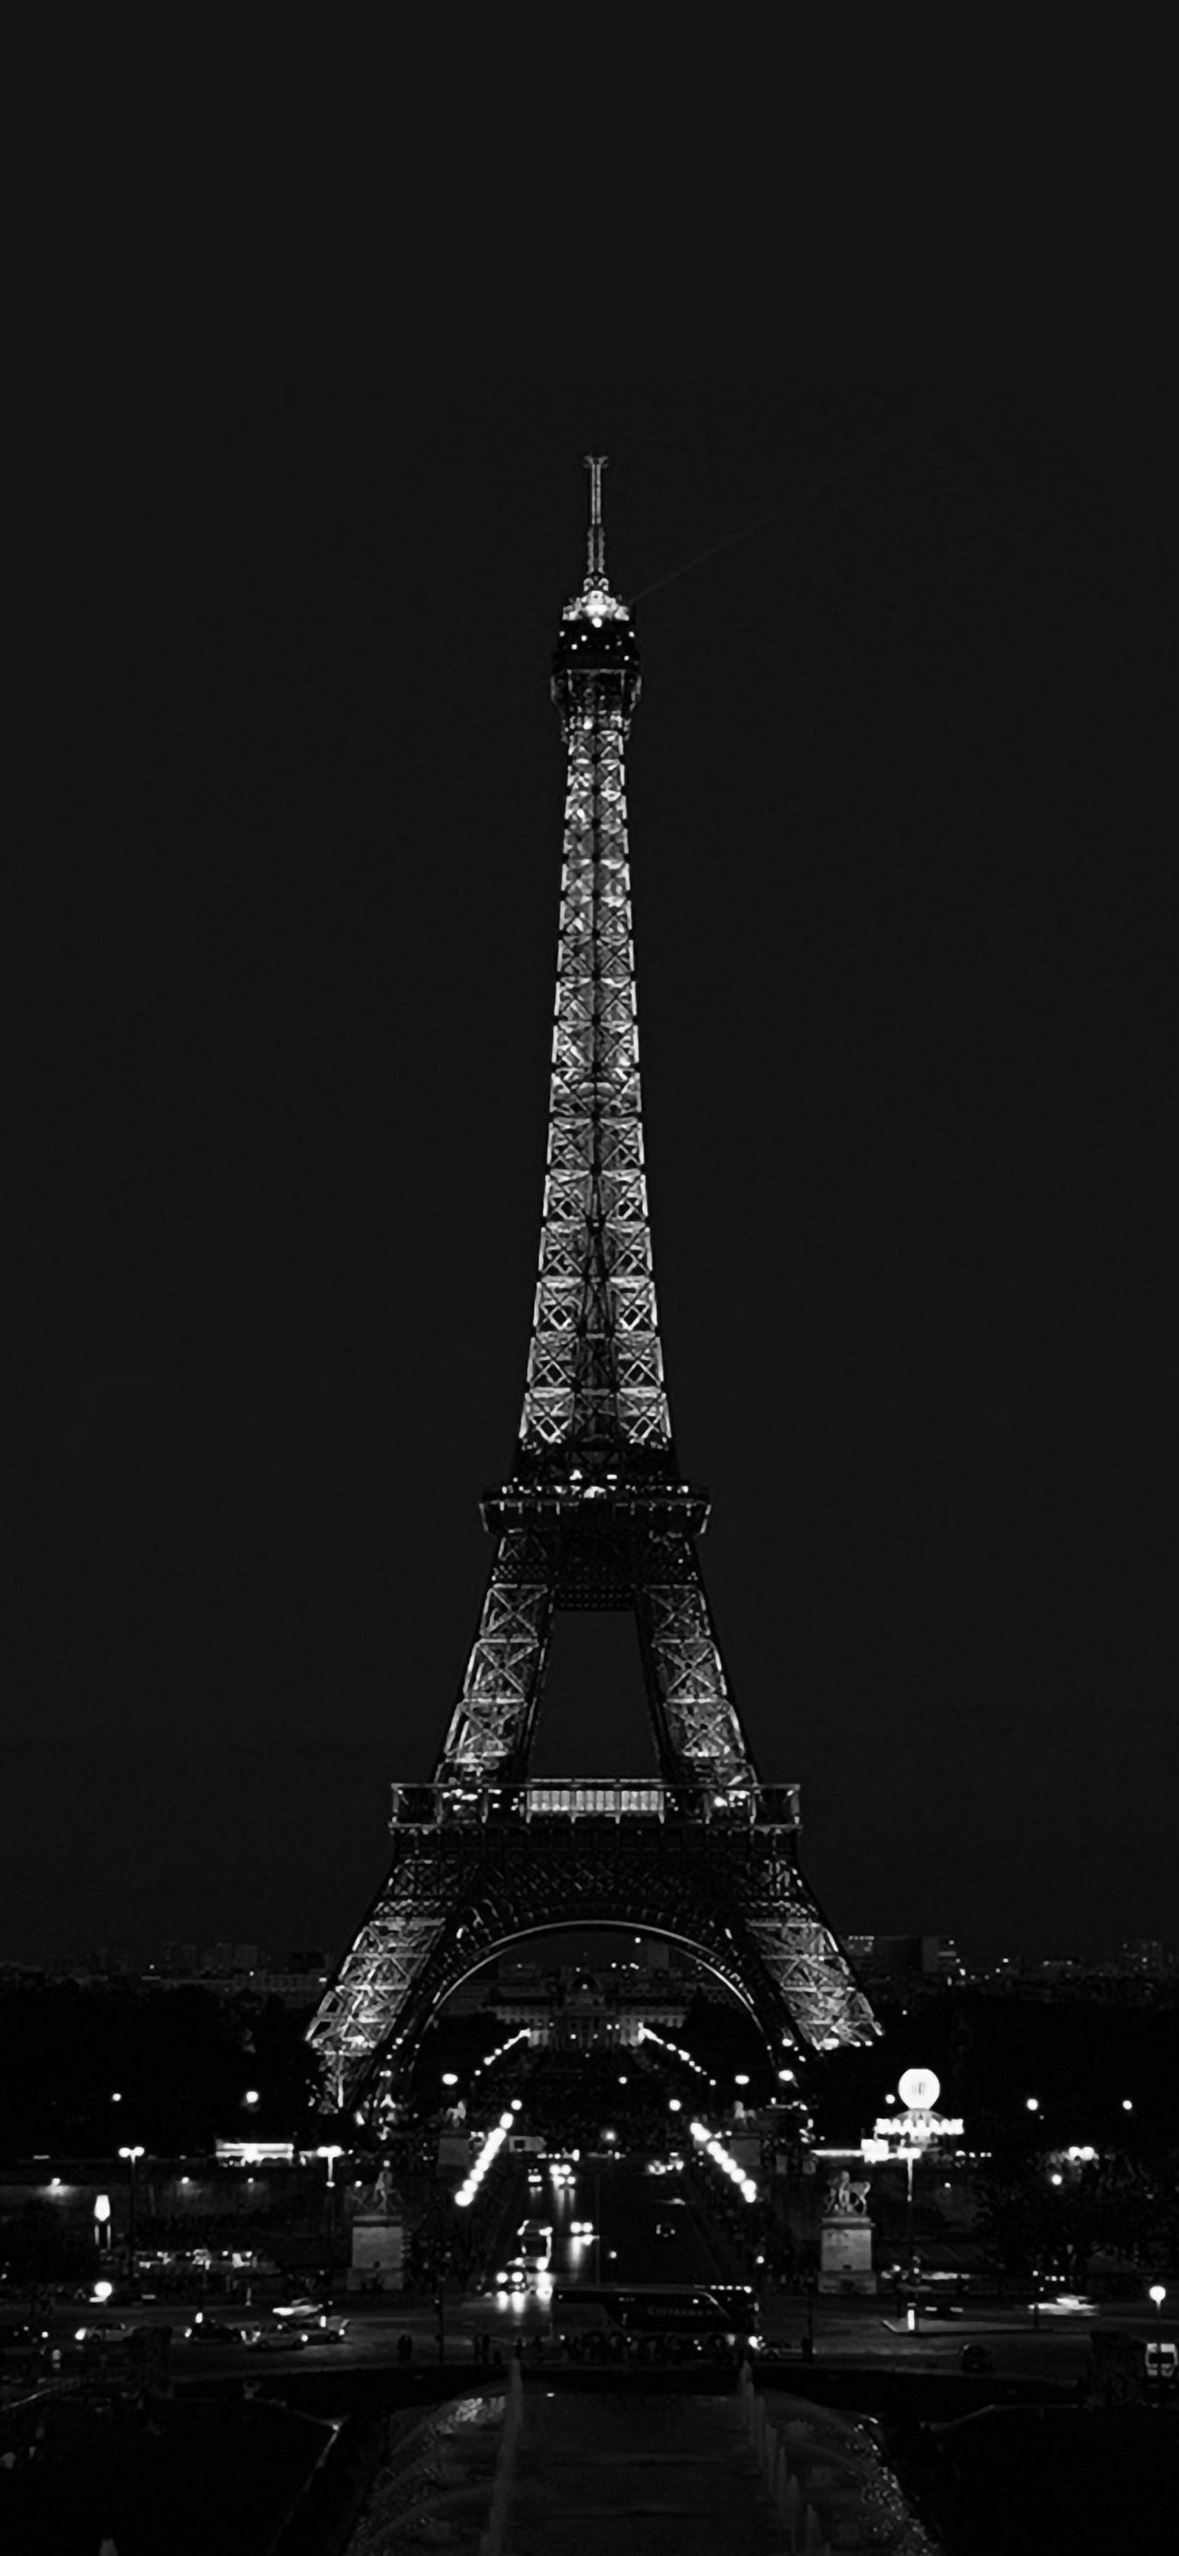 Hình nền iPhone Paris đêm sẽ khiến bạn đắm mình trong một không gian vô cùng lãng mạn và đẹp đẽ. Cảm giác như đang đứng giữa thành phố ánh sáng vậy. Hãy tải về hình nền này để có một không gian lãng mạn và thư giãn trong nhà của bạn.